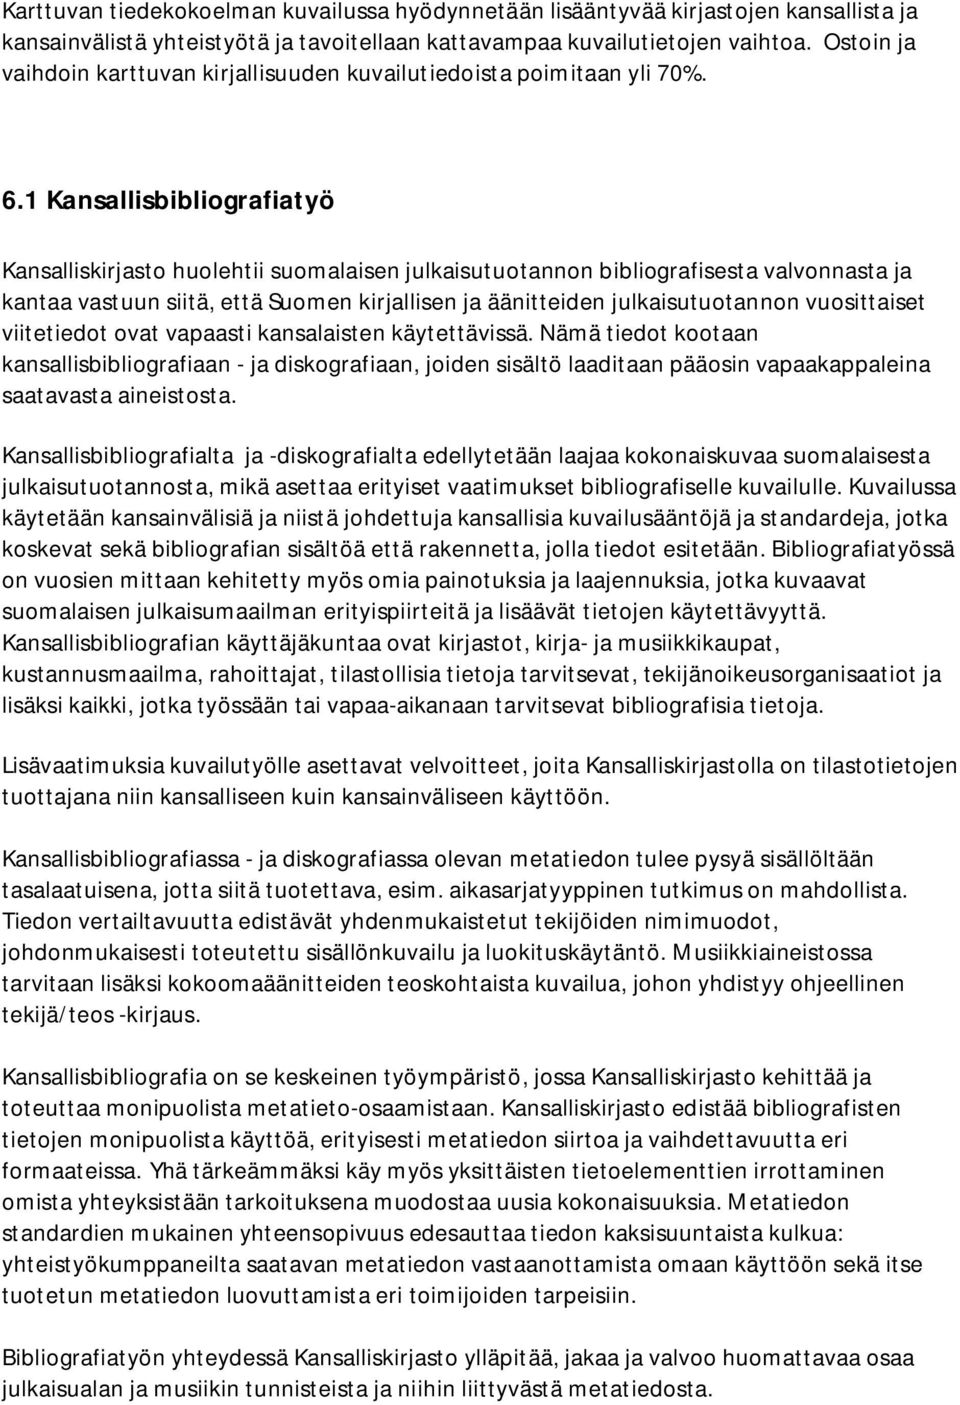 1 Kansallisbibliografiatyö Kansalliskirjasto huolehtii suomalaisen julkaisutuotannon bibliografisesta valvonnasta ja kantaa vastuun siitä, että Suomen kirjallisen ja äänitteiden julkaisutuotannon